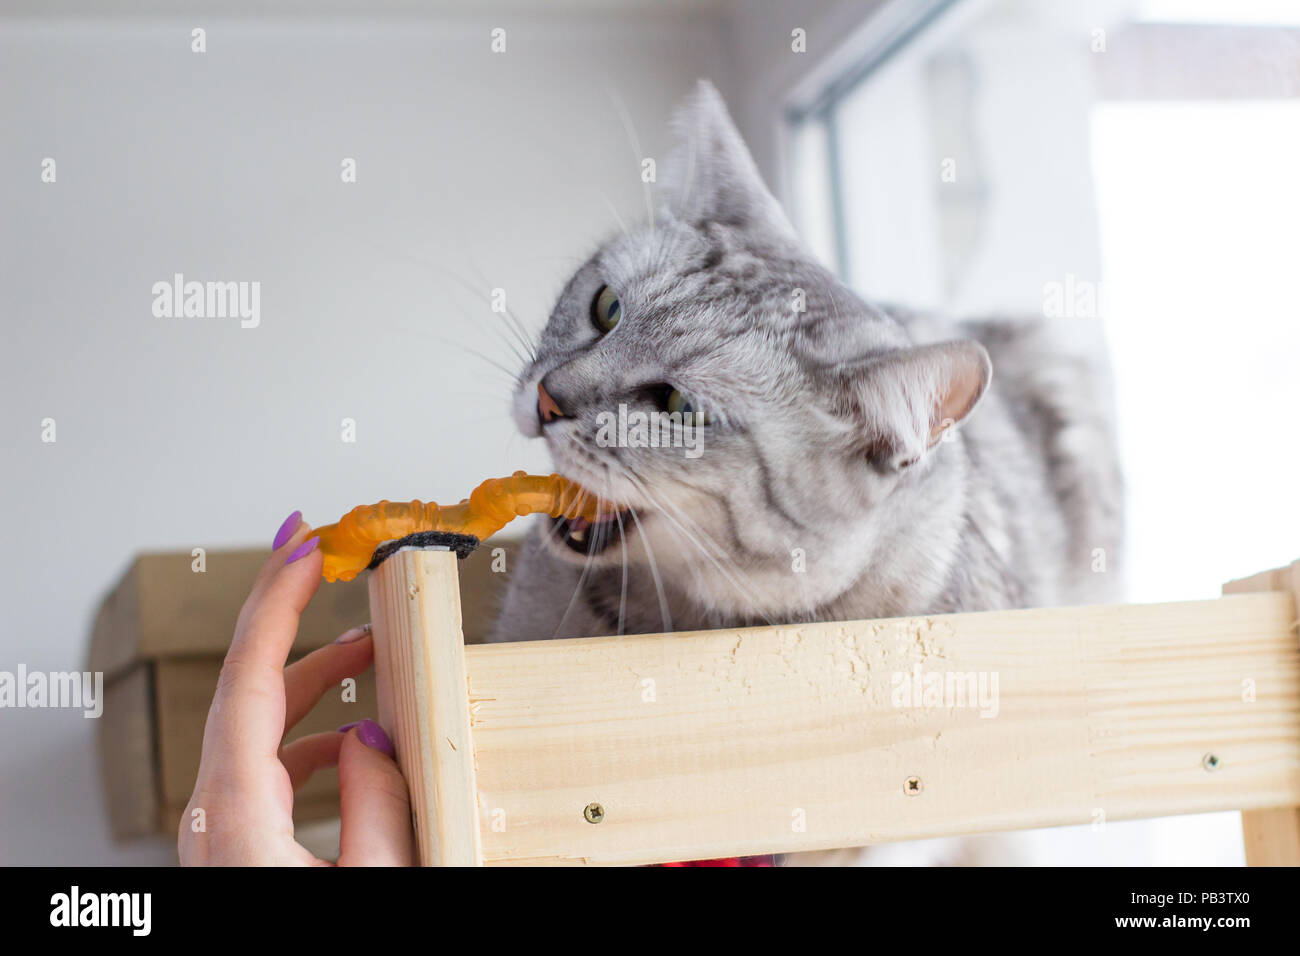 Arrabbiato scottish tabby cat morsi arancione giocattolo. Foto Stock